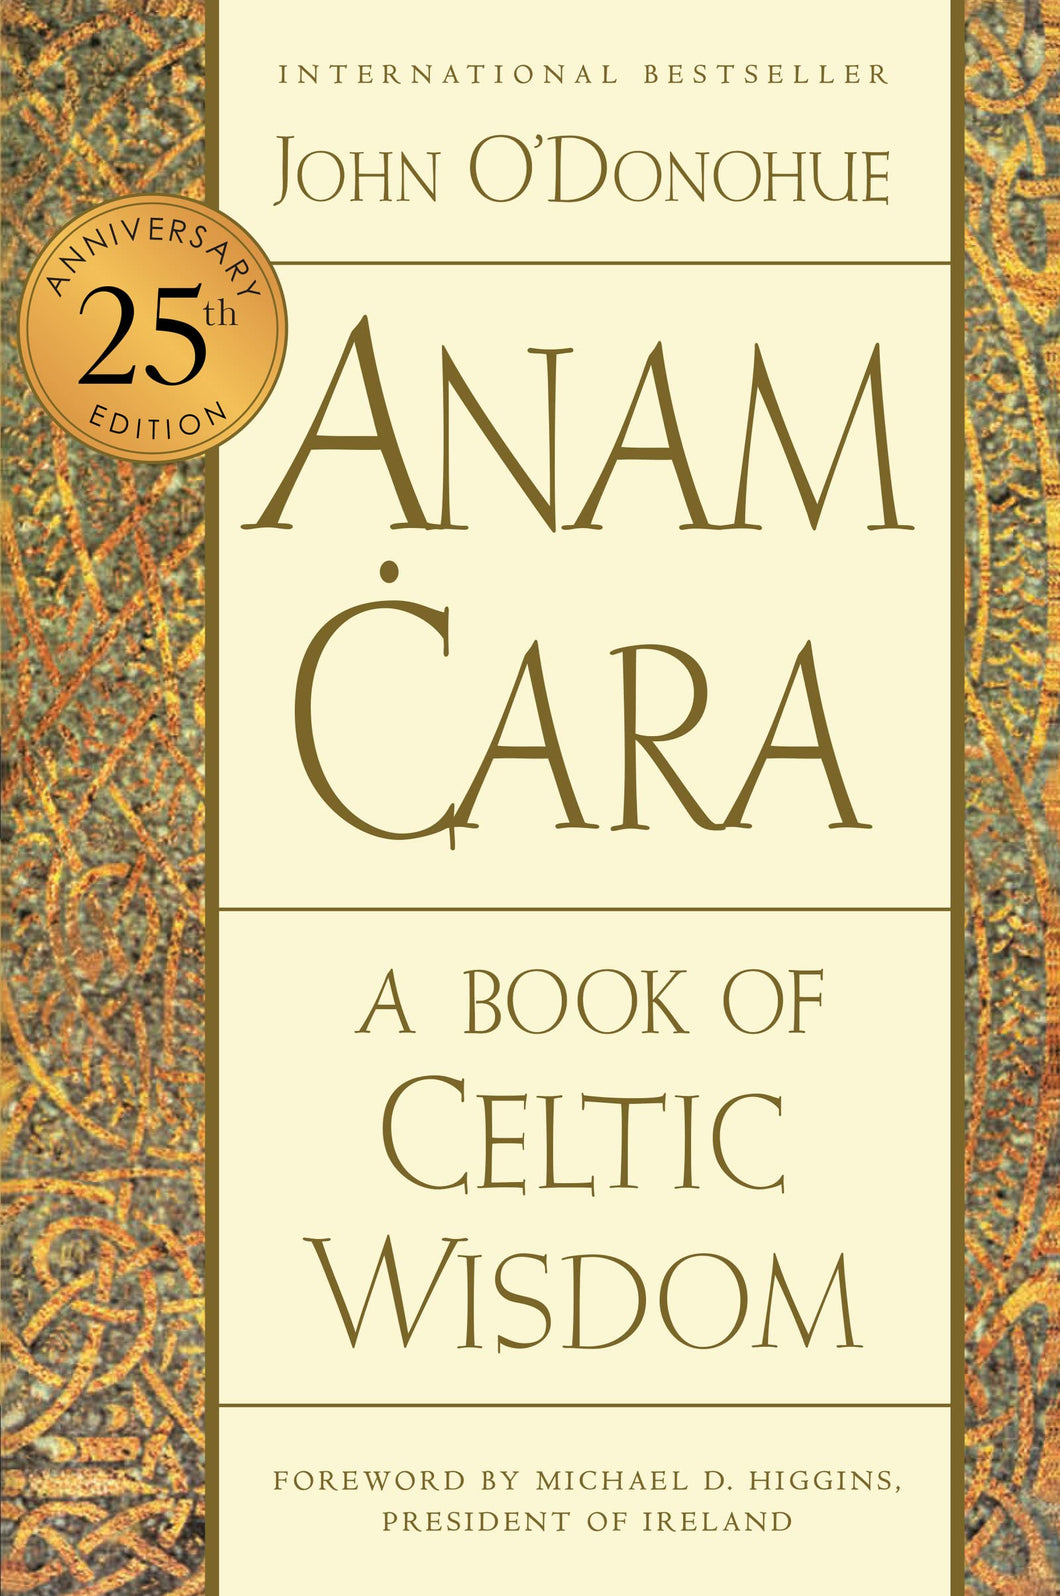 Anam Cara: A Book Of Celtic Wisdom [John O'Donohue]